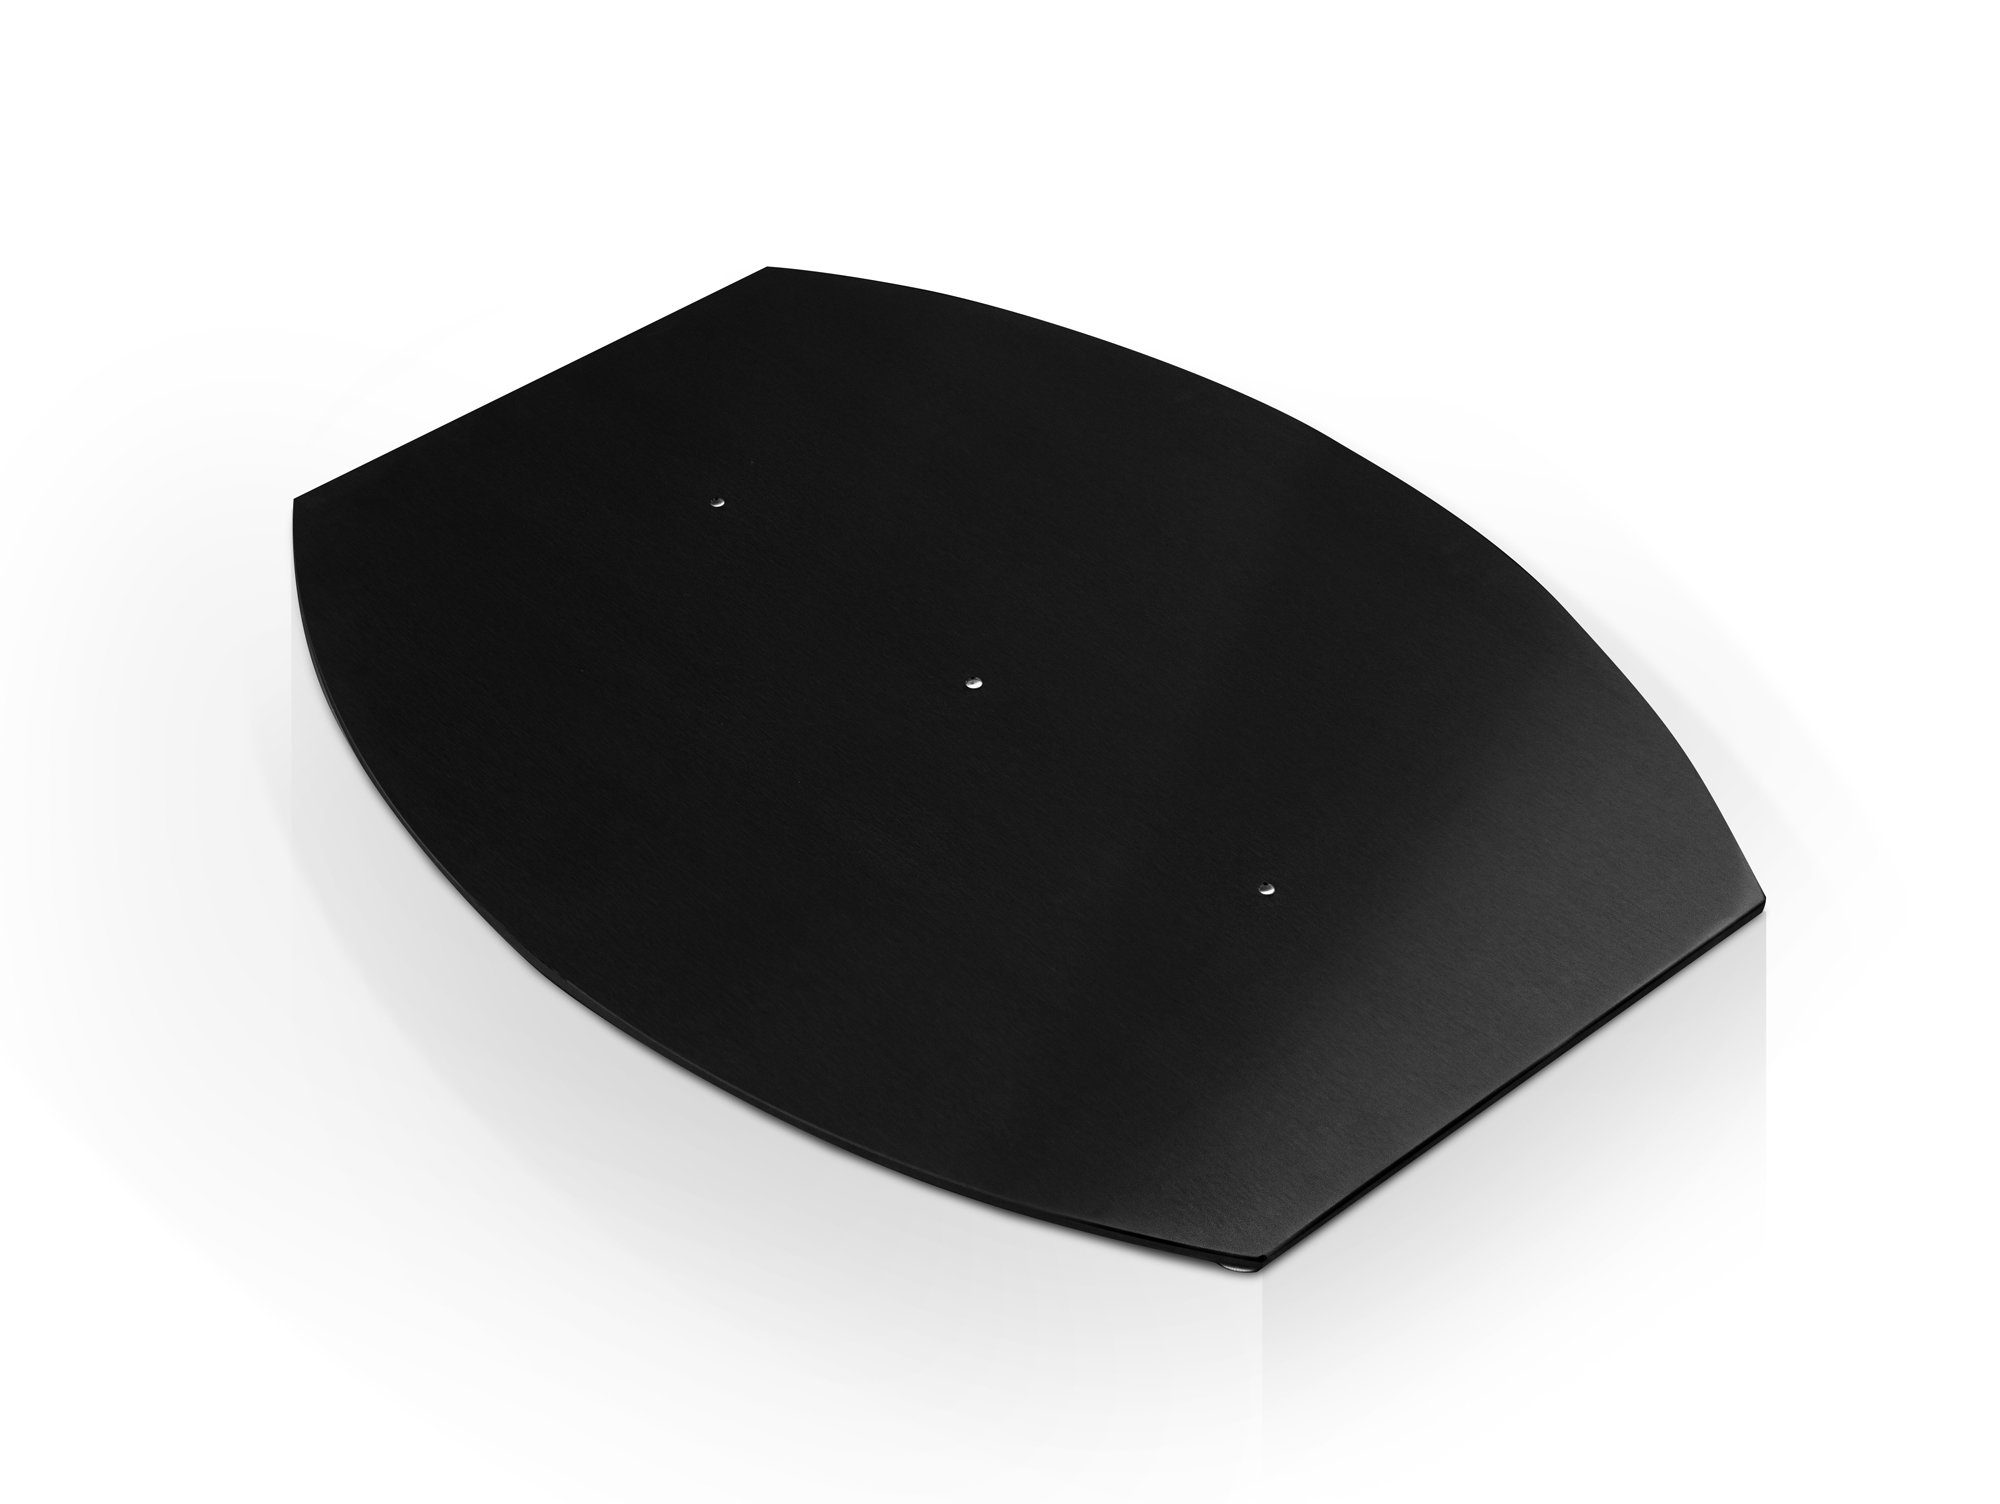 Moebel-Eins Tischgestell Bodenplatte bootsform, Material Edelstahl, Bodenplatte bootsform, Material Edelstahl Schwarz